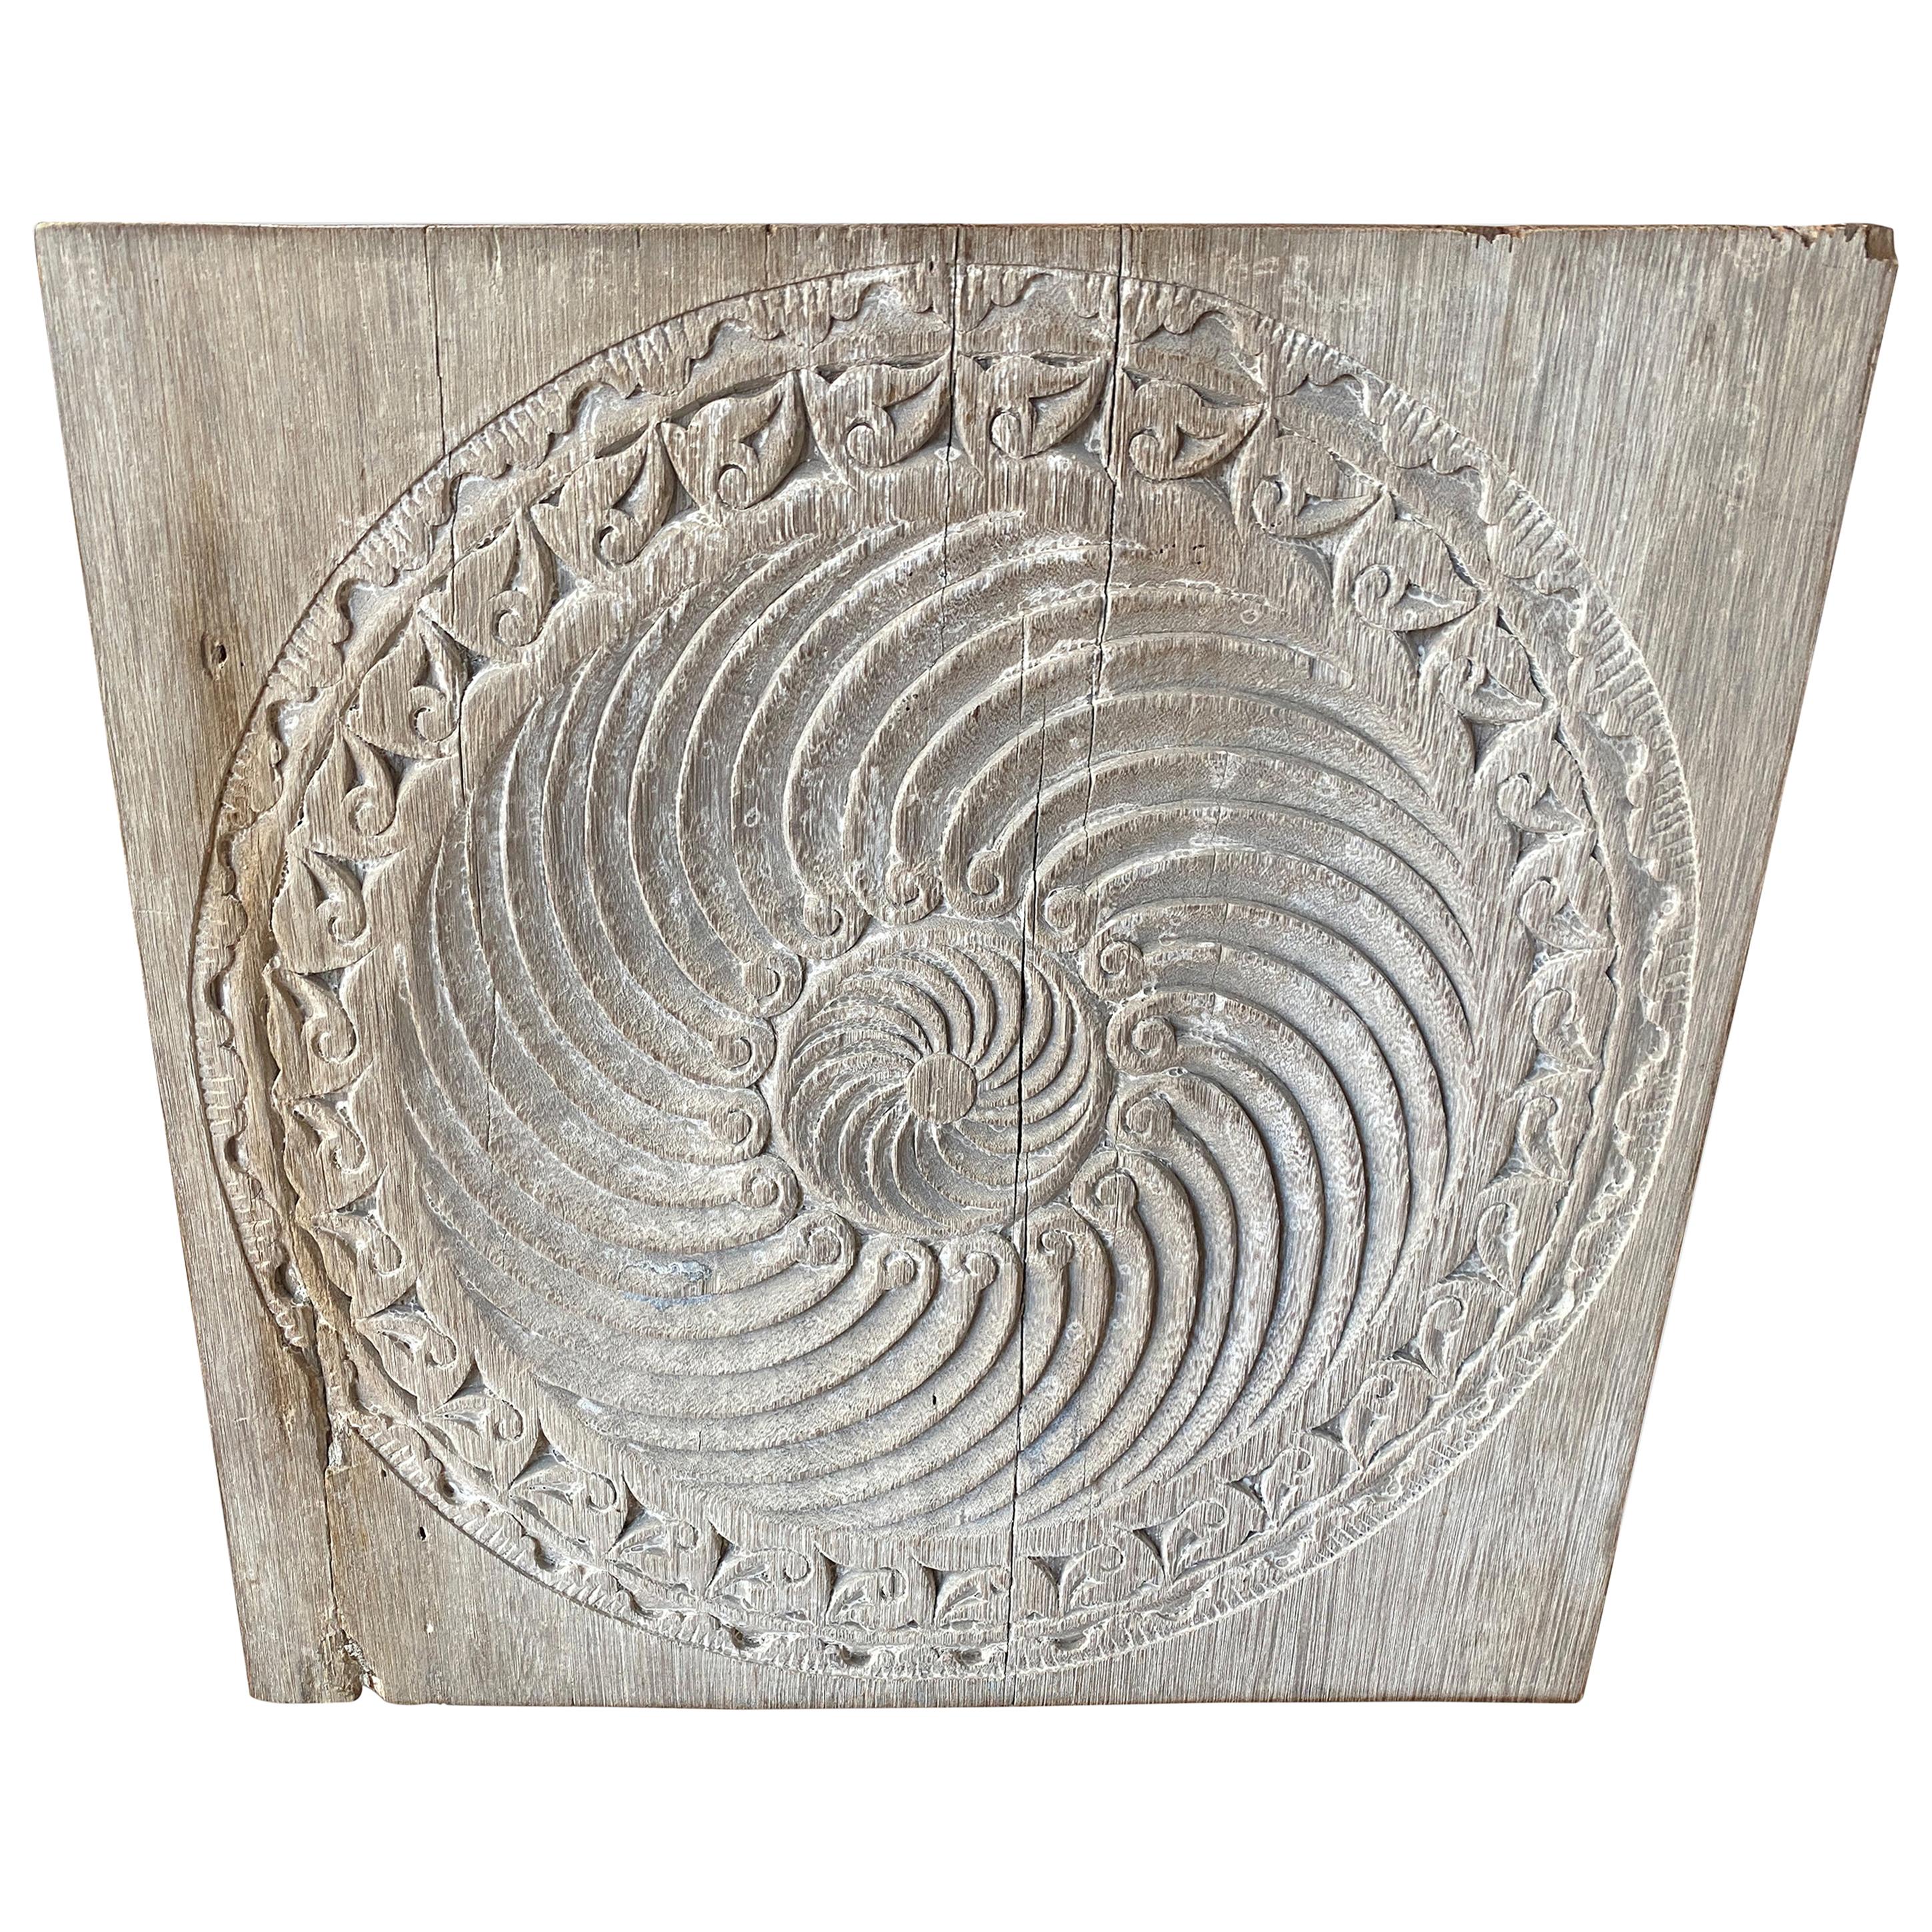 Andrianna Shamaris Antique White Washed Merbau Wood Carved Panel